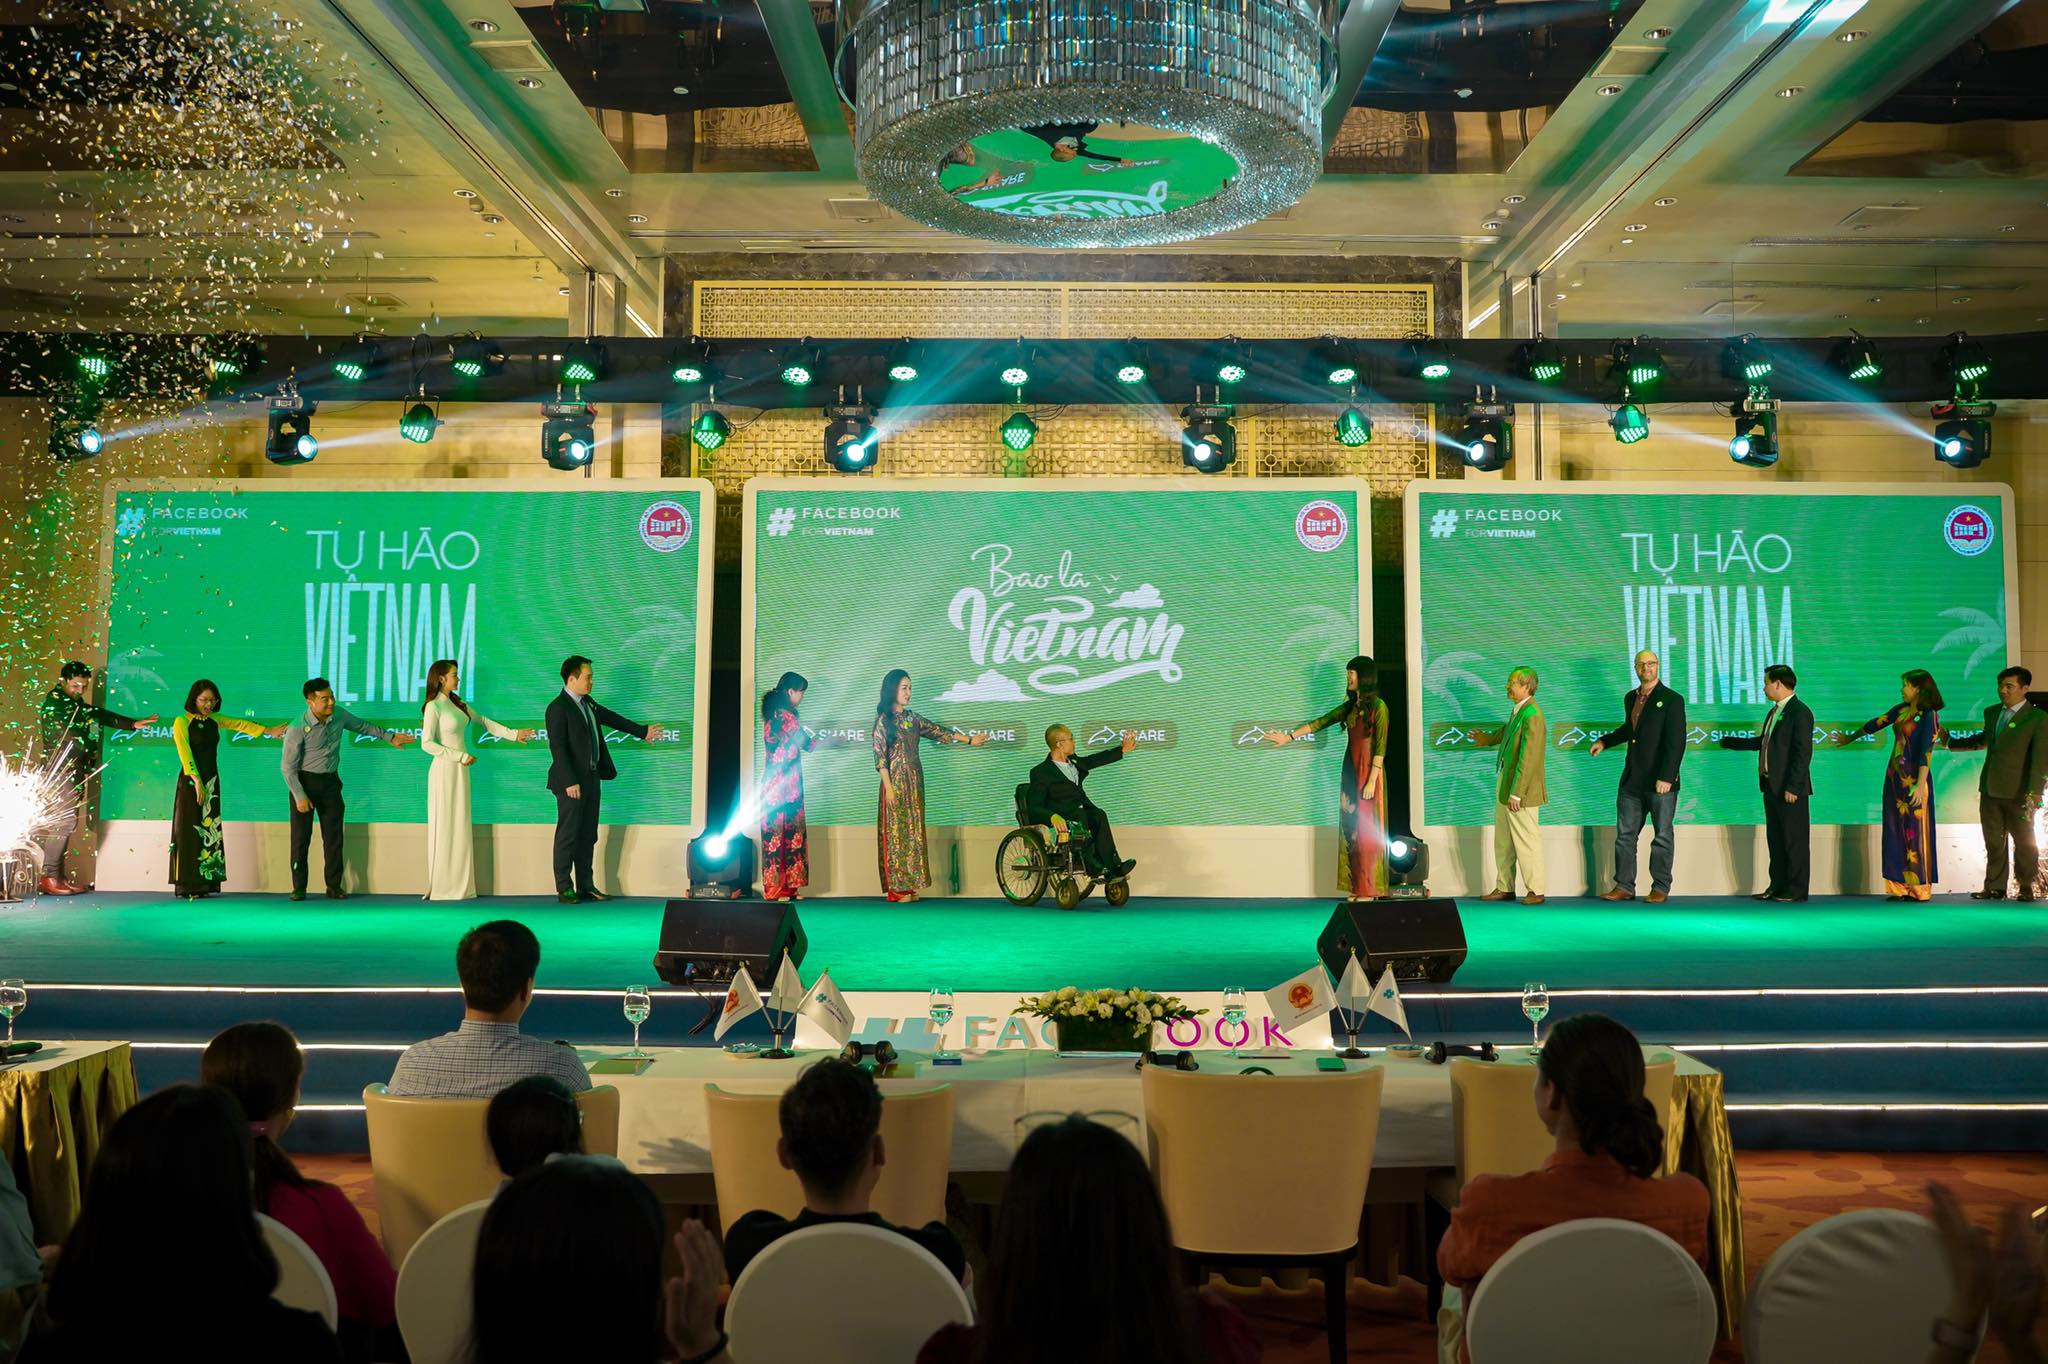 Ra mắt clip quảng bá 'Việt Nam - điểm đến an toàn'